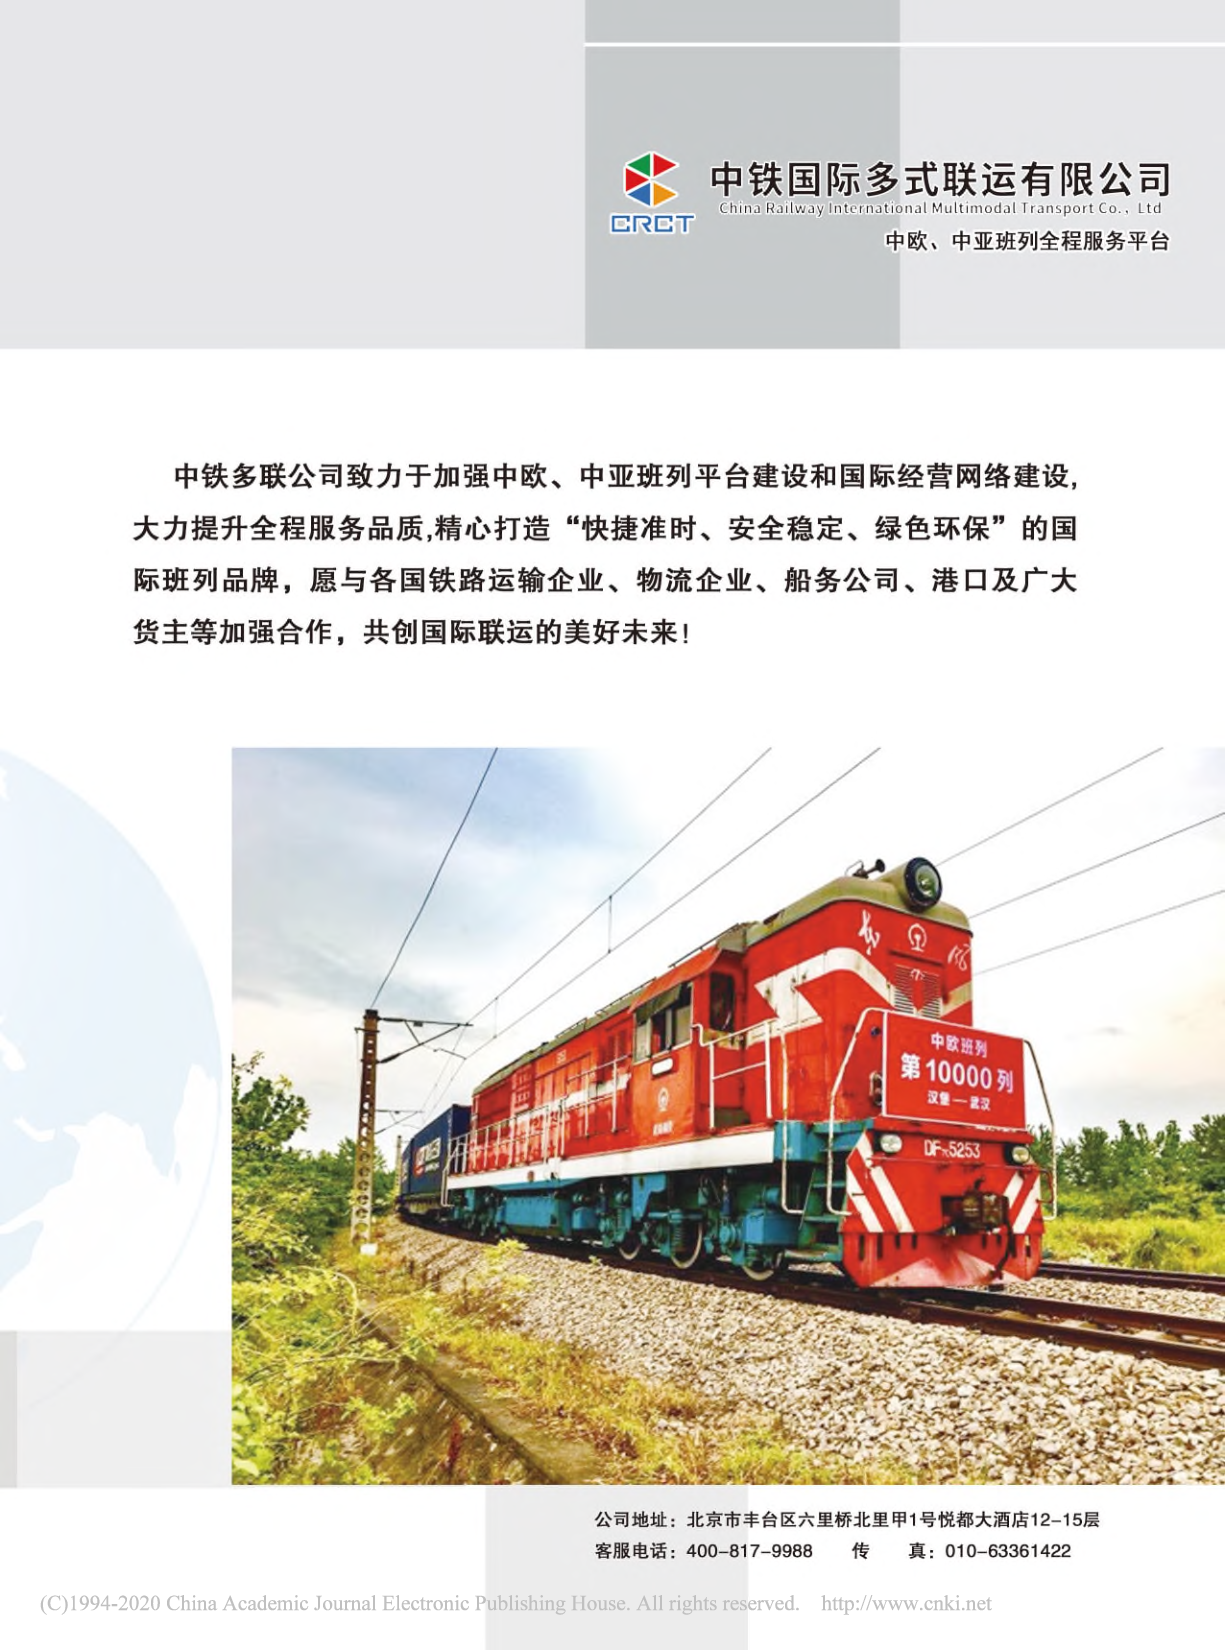 中铁国际多式联运有限公司__中欧_中亚班列全程服务平台